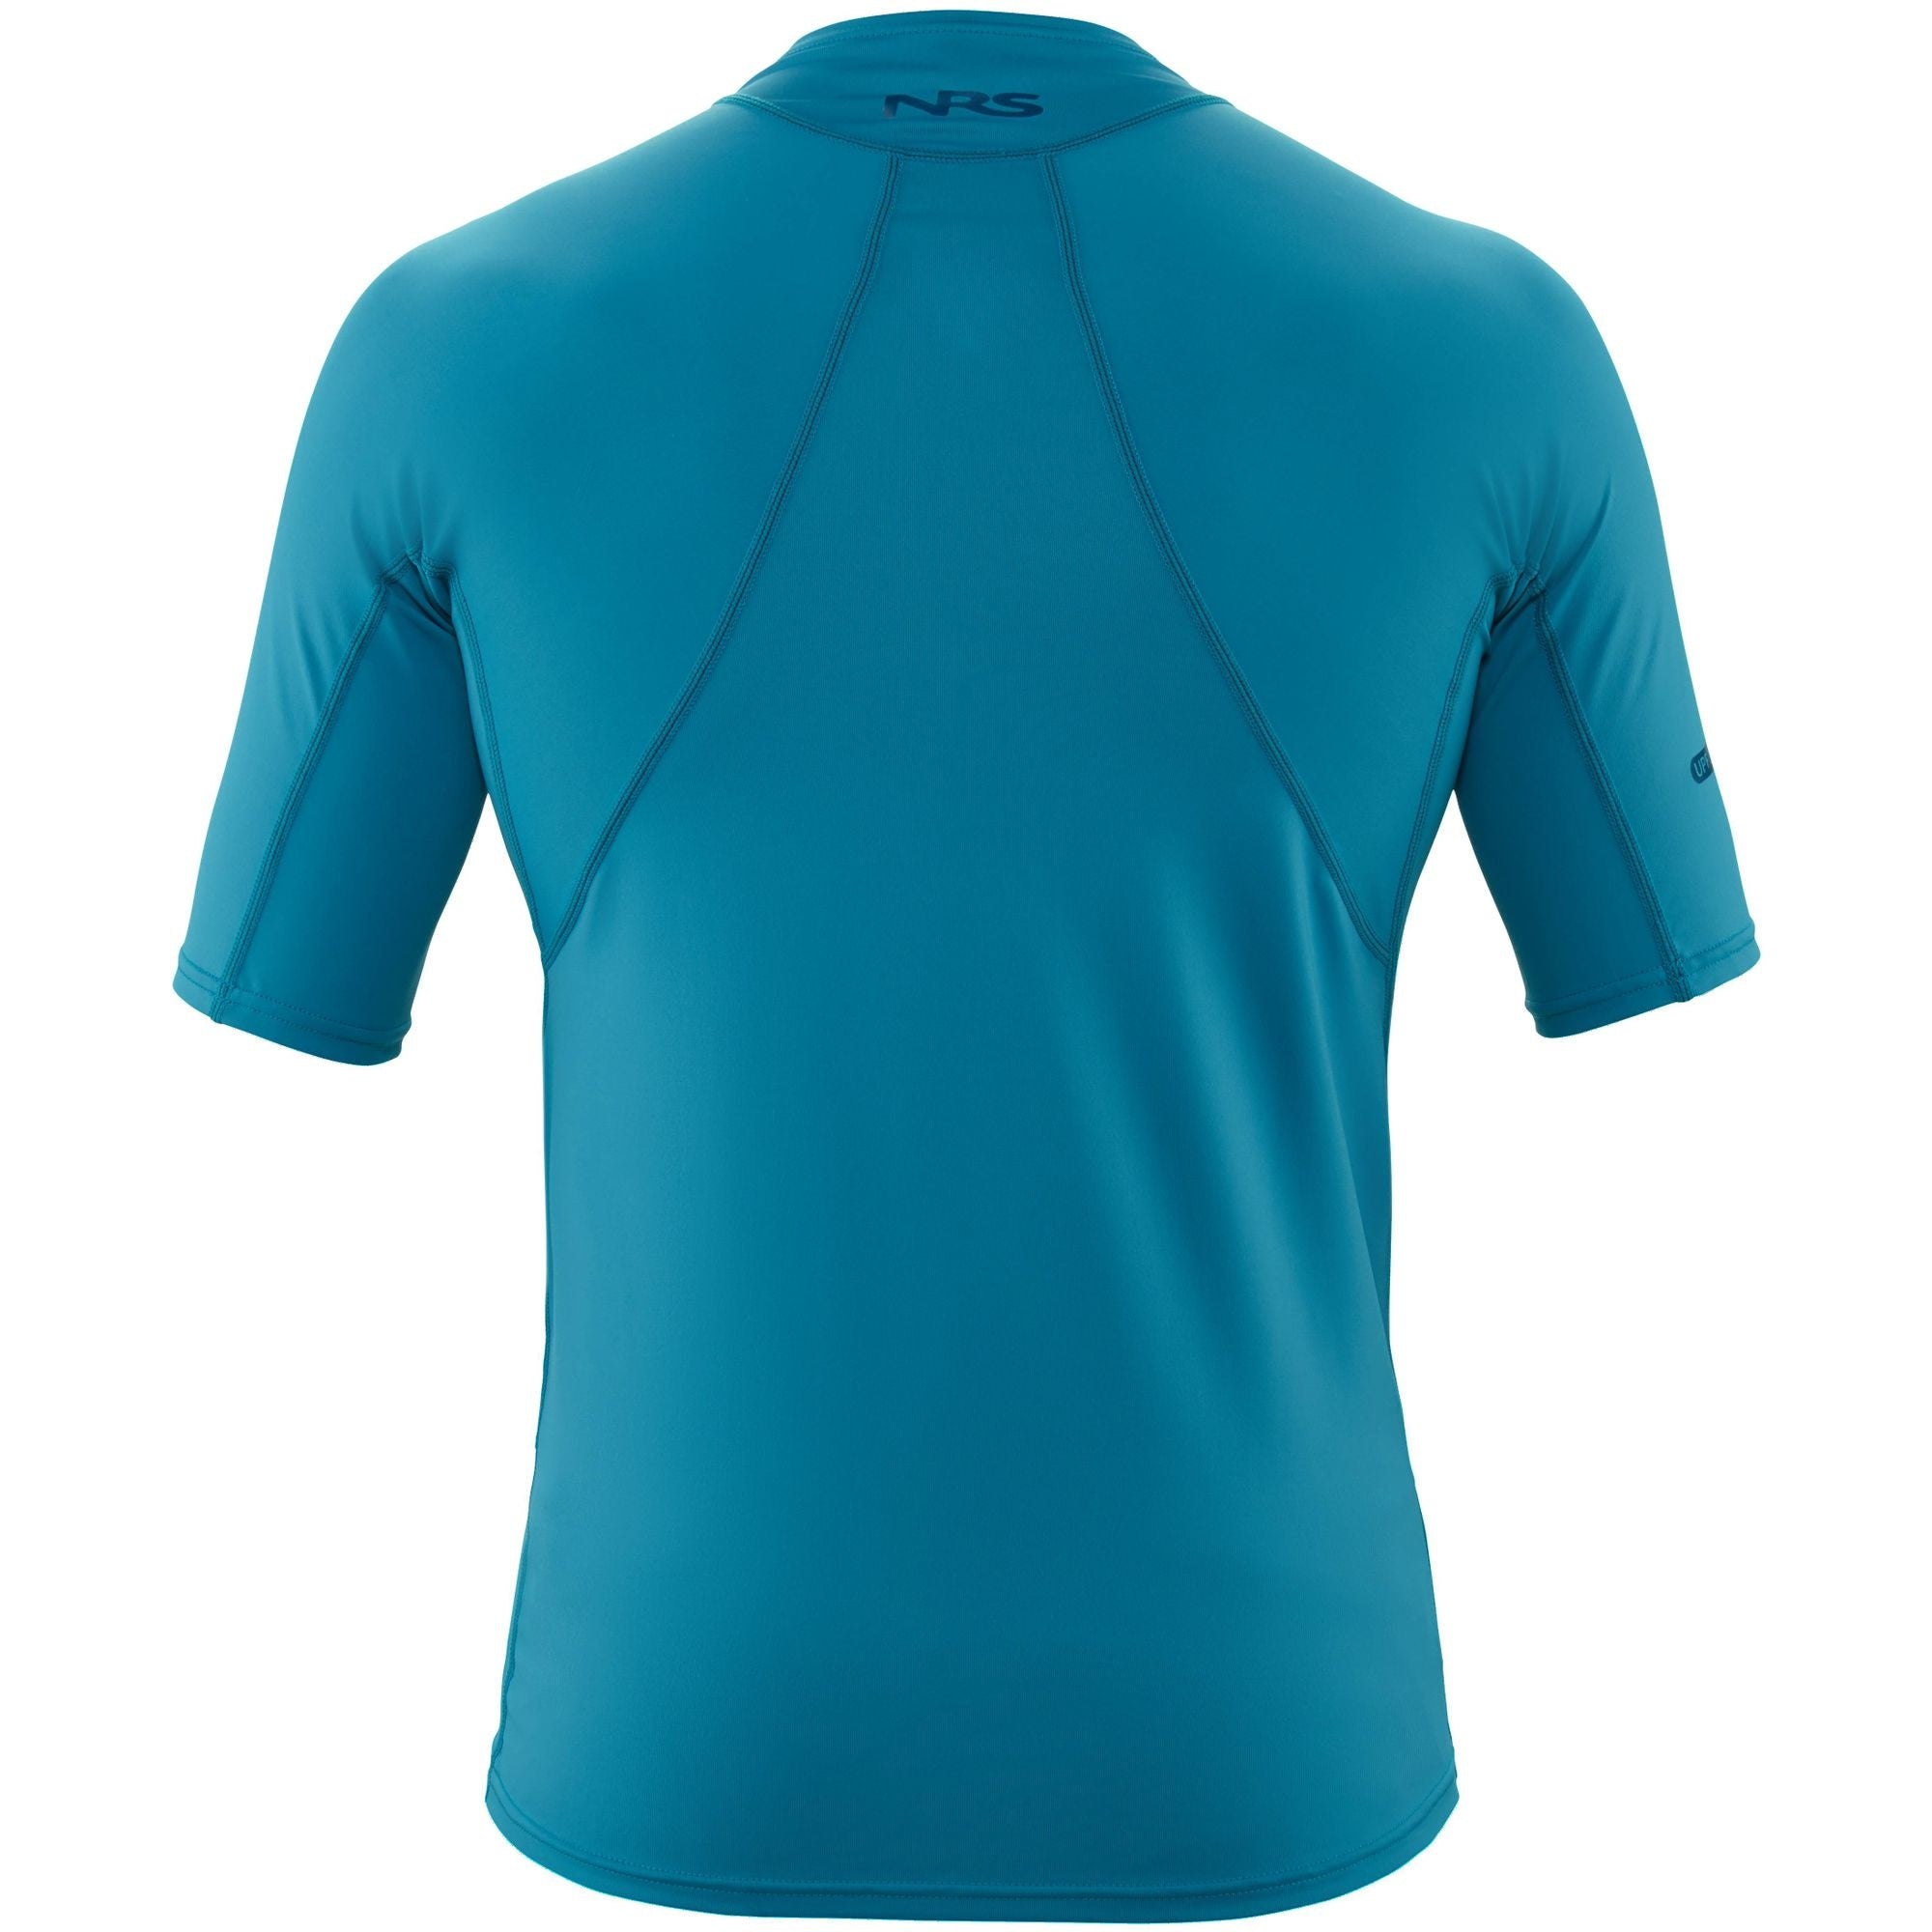 NRS - Men's H2Core Rashguard Short-Sleeve Shirt